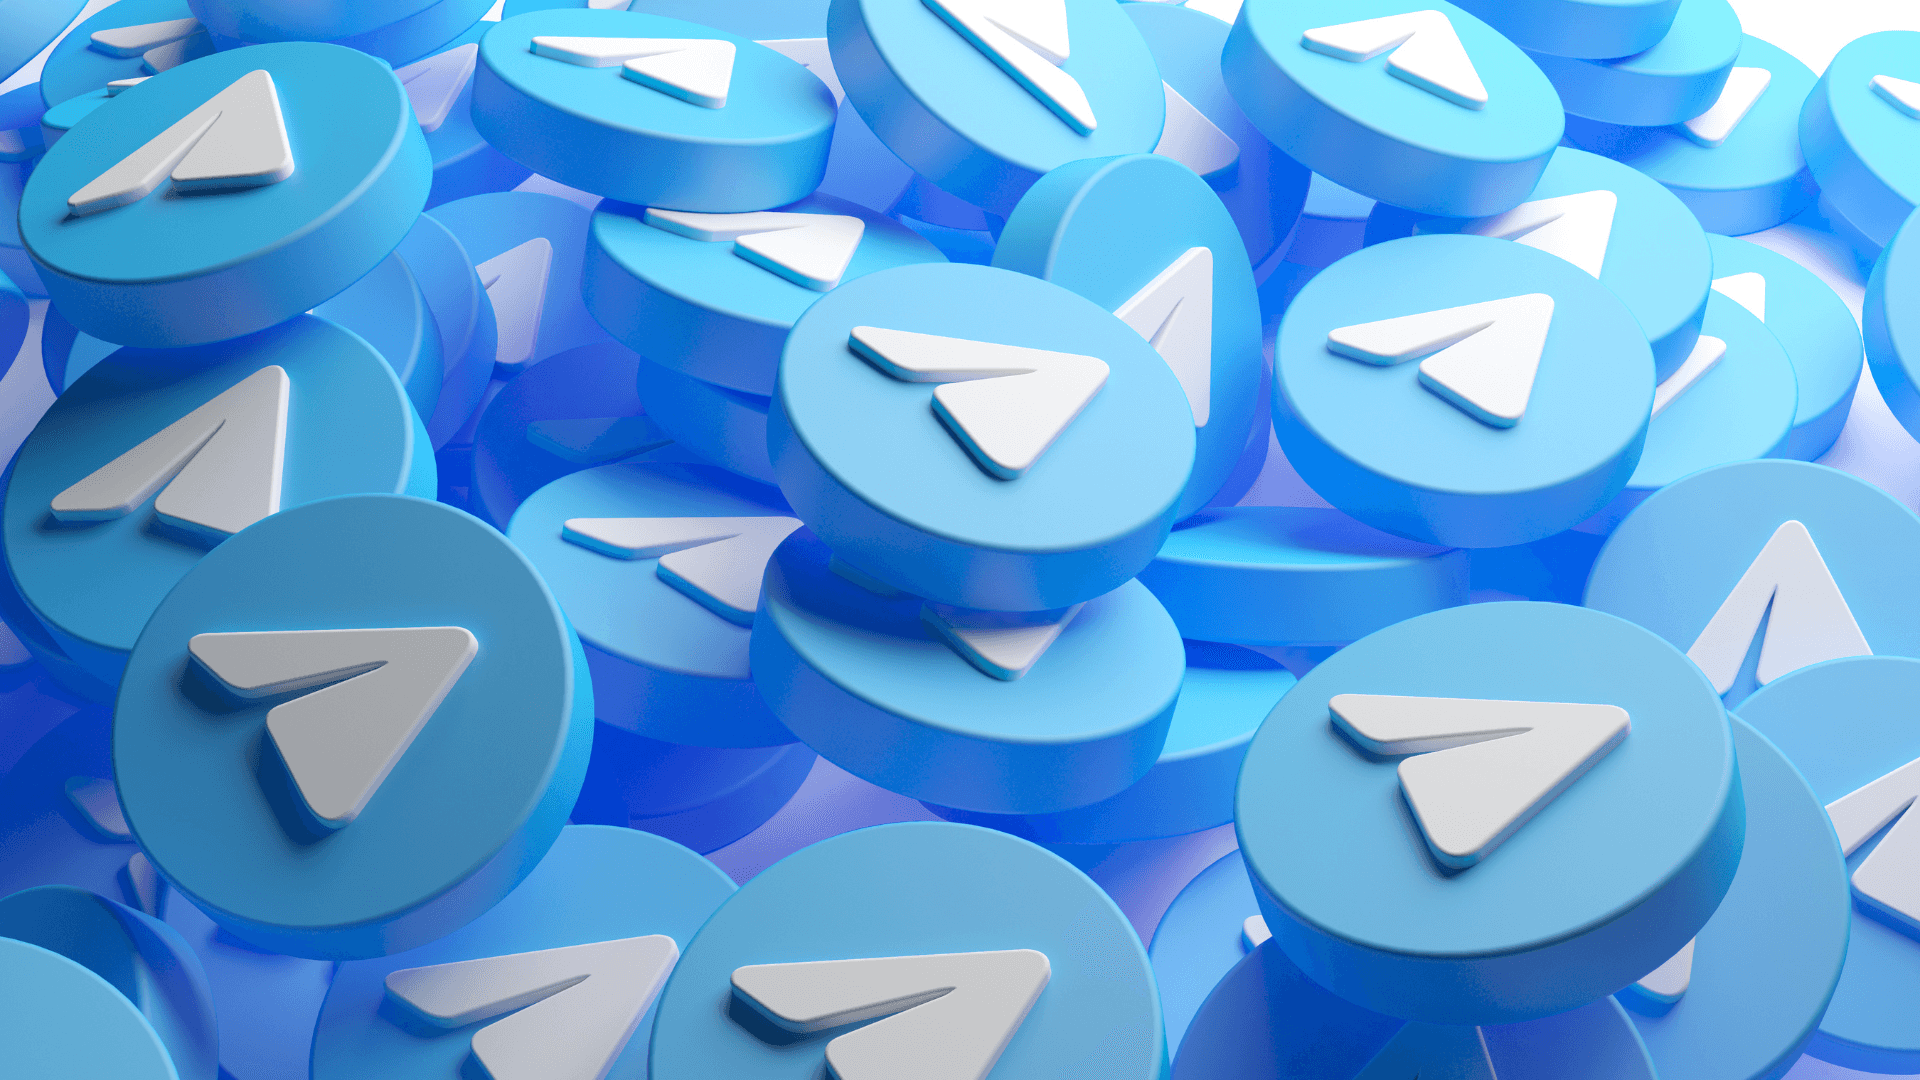 Umgrupo De Logotipos Do Telegram Em Azul E Branco